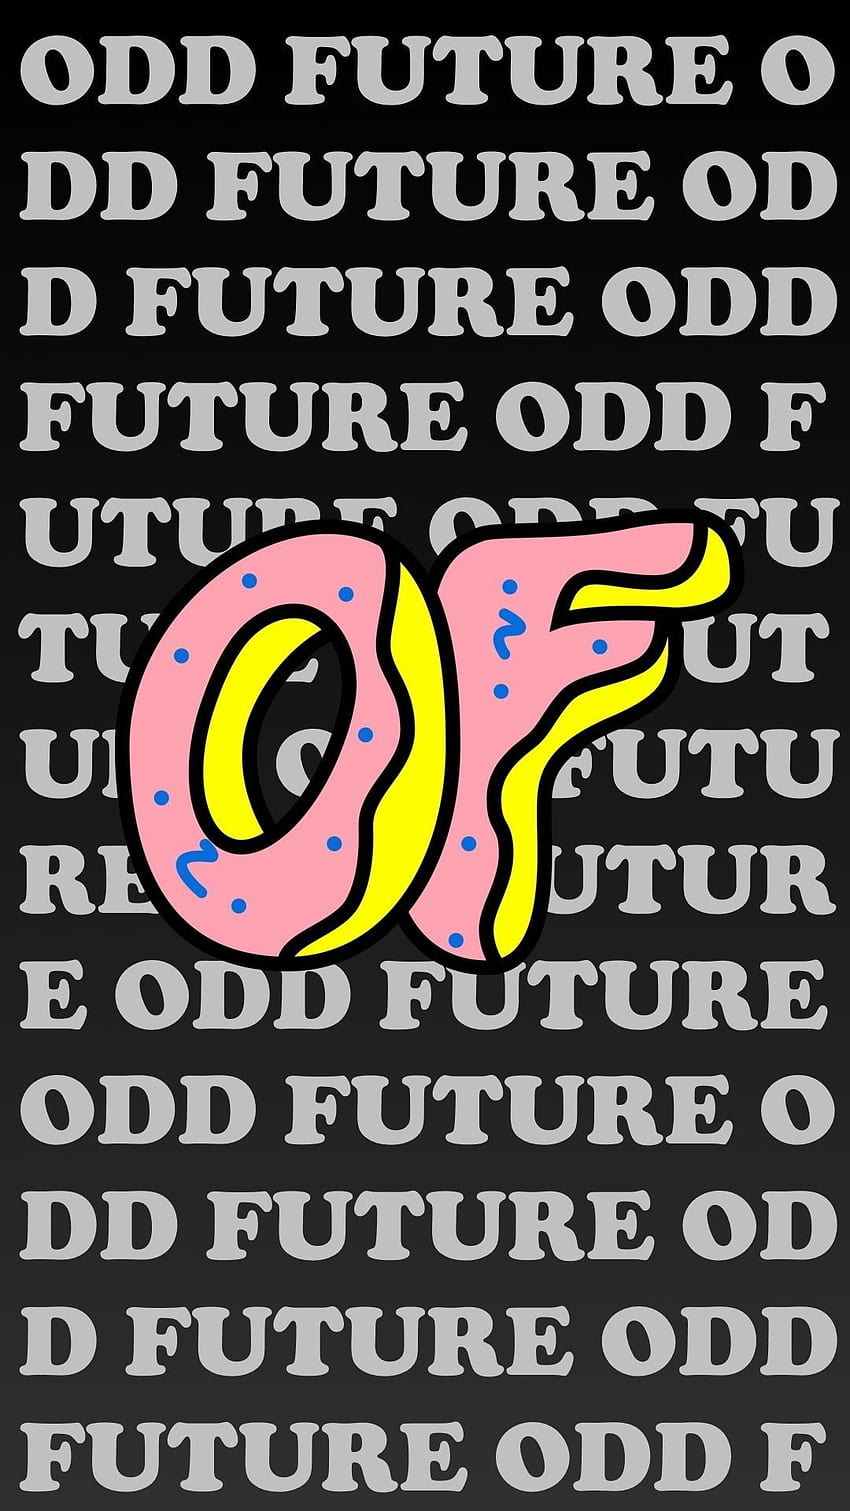 Ungerade Zukunftsästhetik _ Ungerade Zukunft im Jahr 2020. Ungerade Zukunft, Zukunft, Ungerade Zukunft, Odd Future Logo HD-Handy-Hintergrundbild